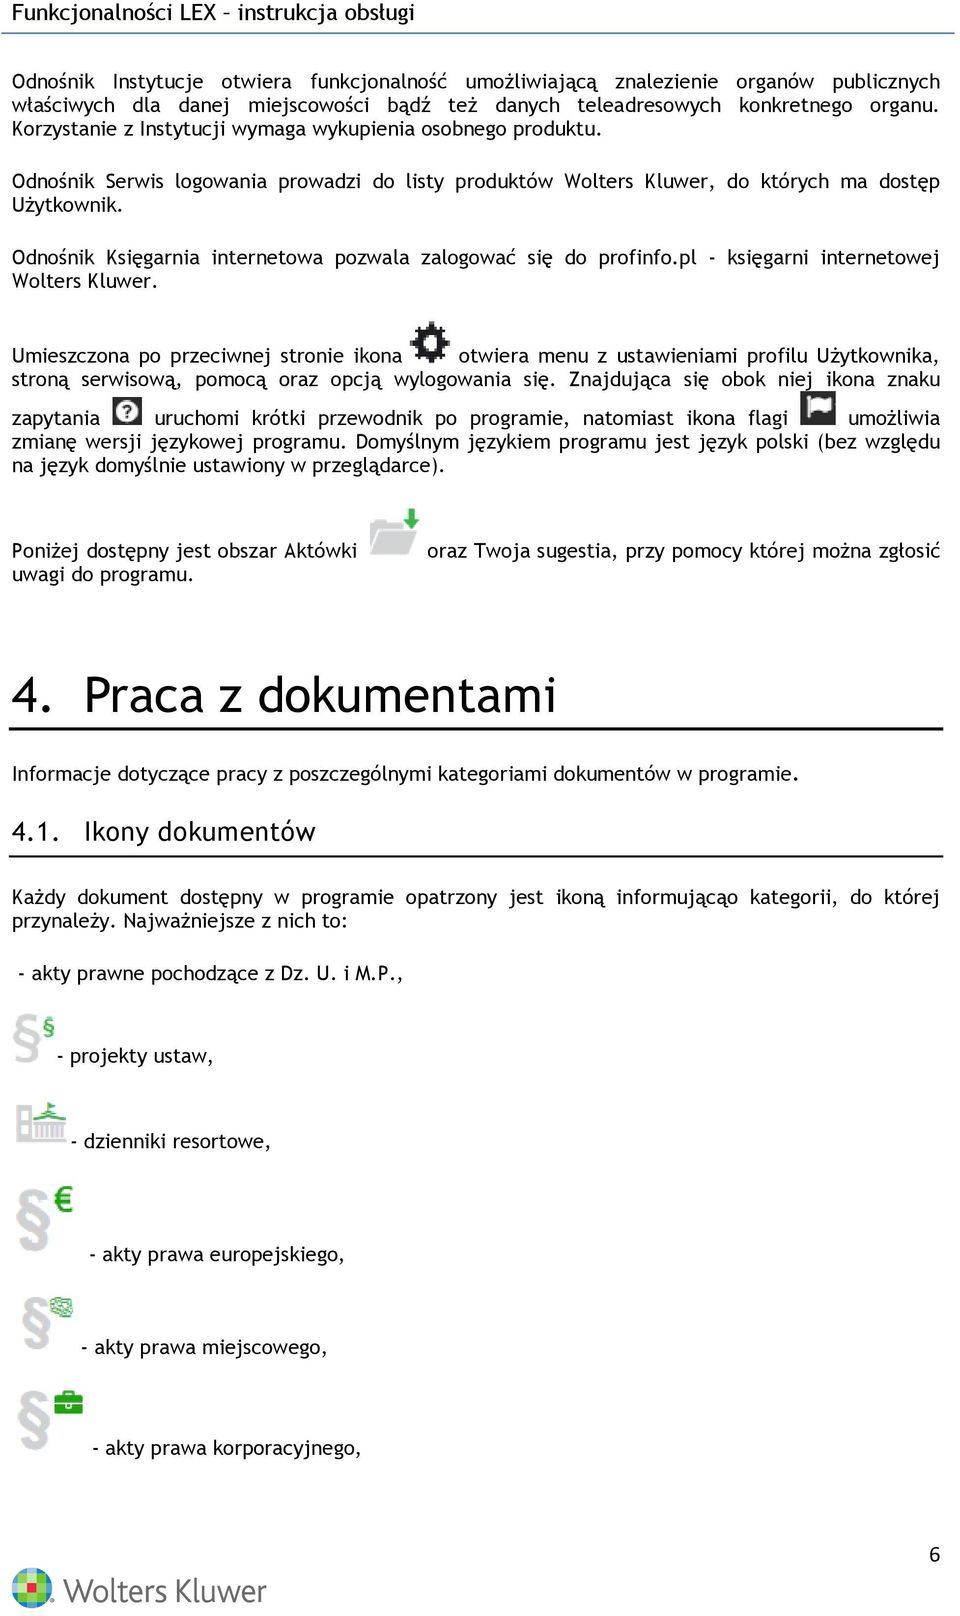 Odnośnik Księgarnia internetowa pozwala zalogować się do profinfo.pl - księgarni internetowej Wolters Kluwer.